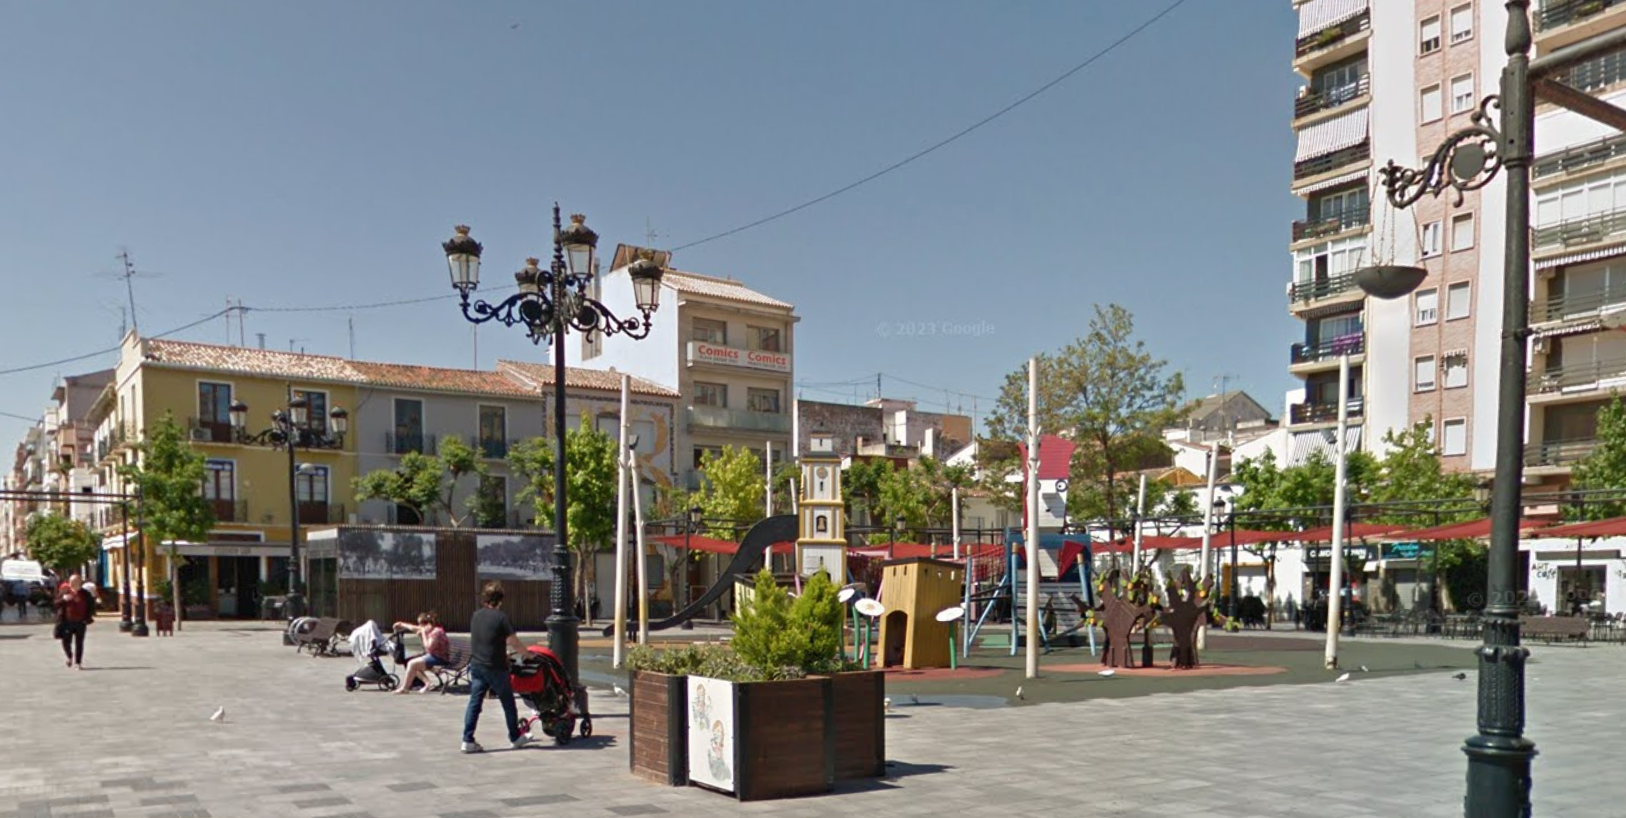 Plaça del Prado by Google Earth